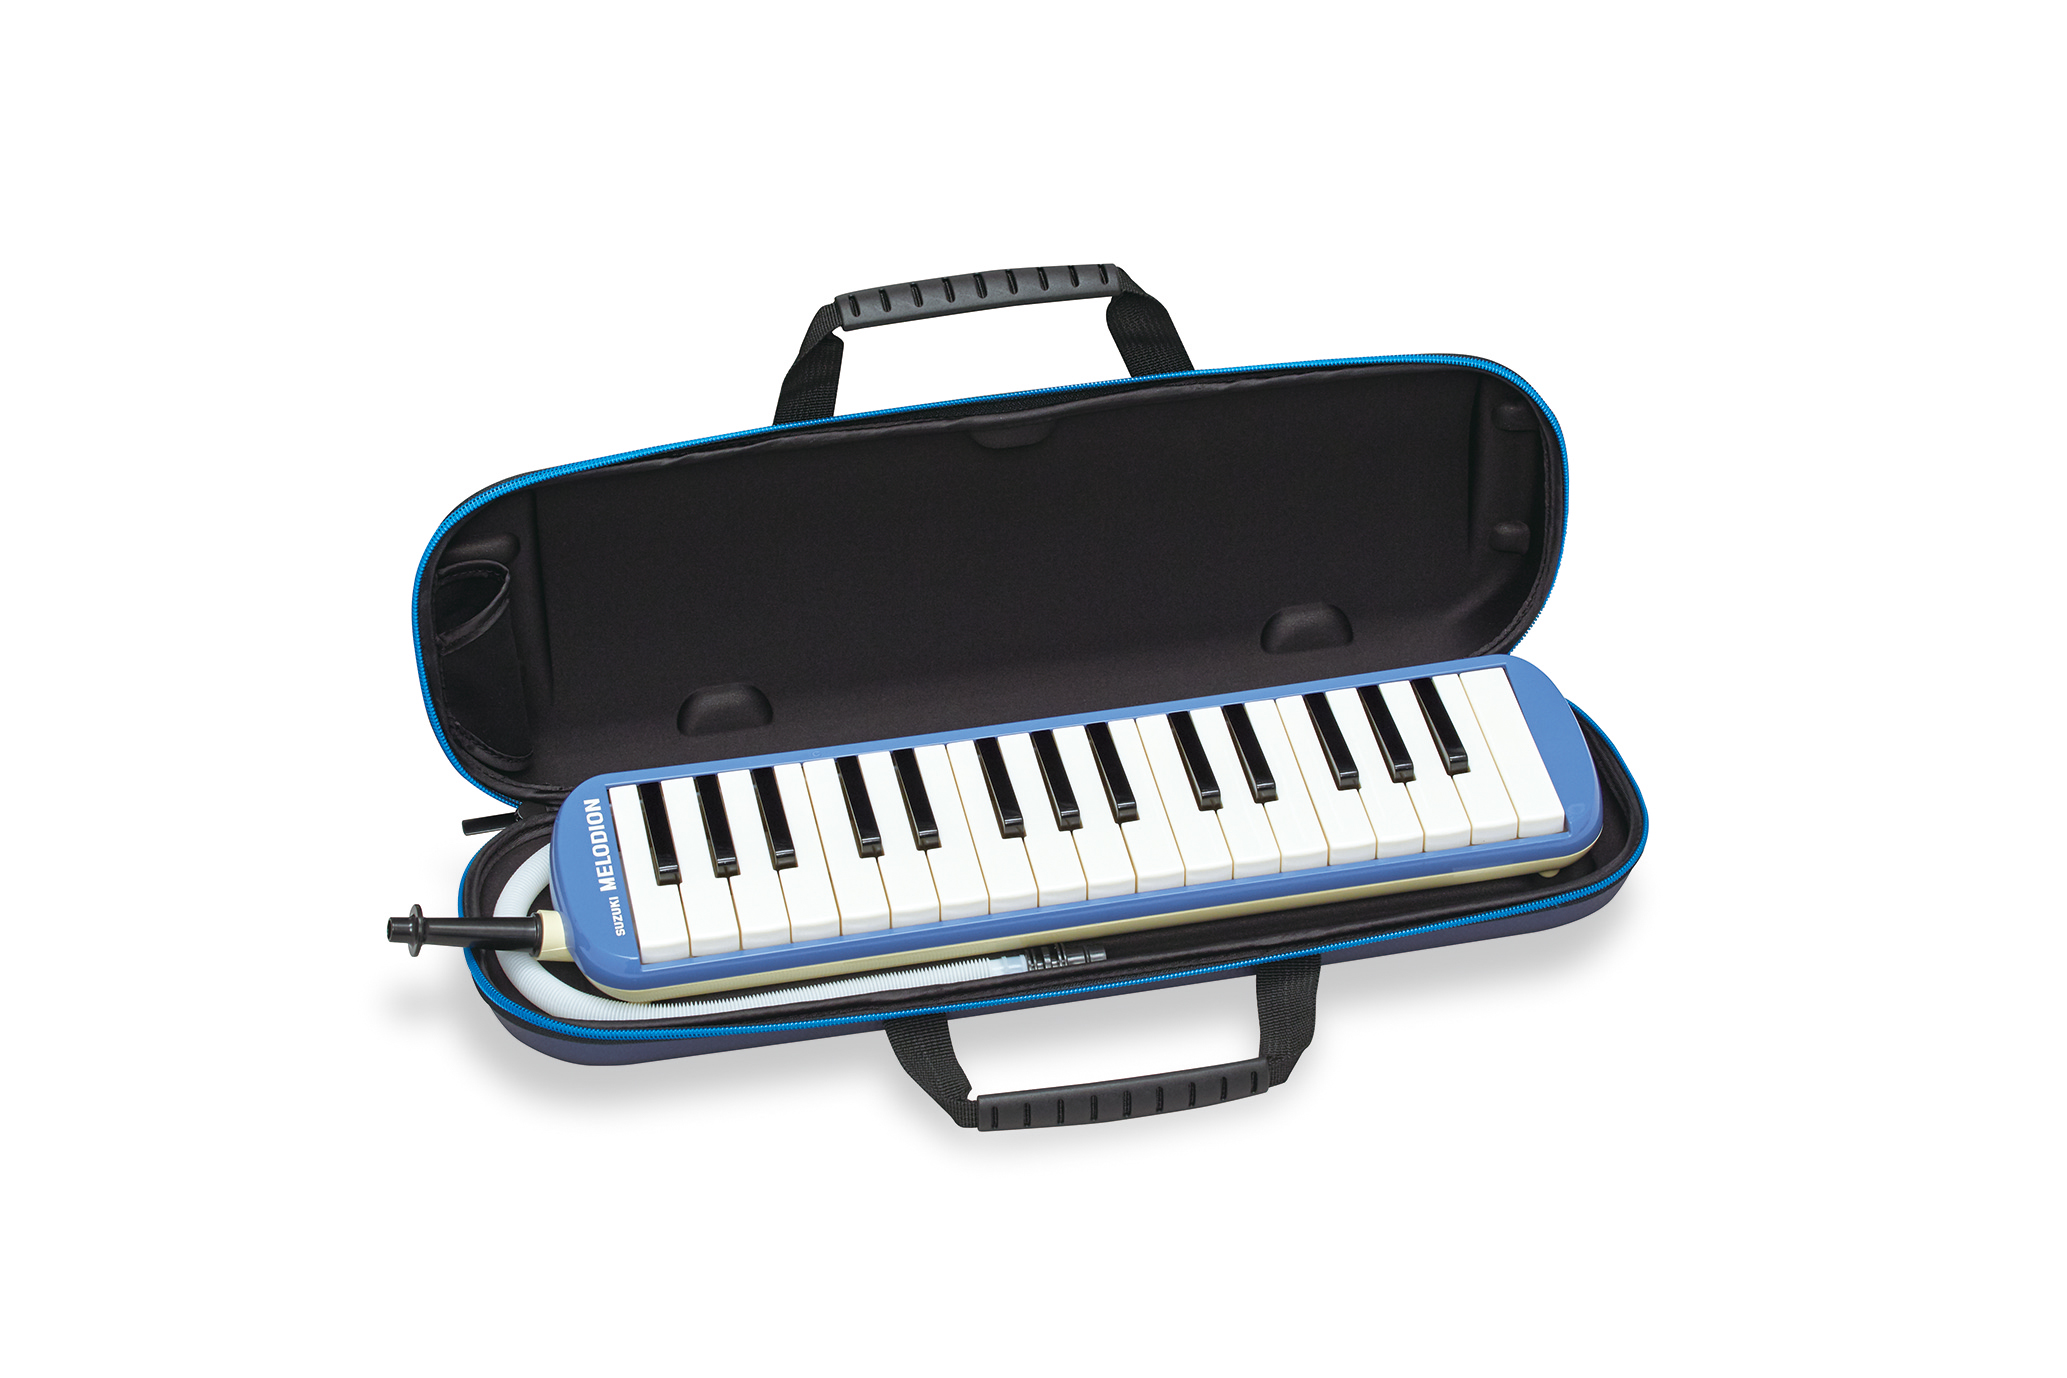 ゼンオン 鍵盤ハーモニカ指導マグネットシート ZKM-5 - 鍵盤楽器、ピアノ